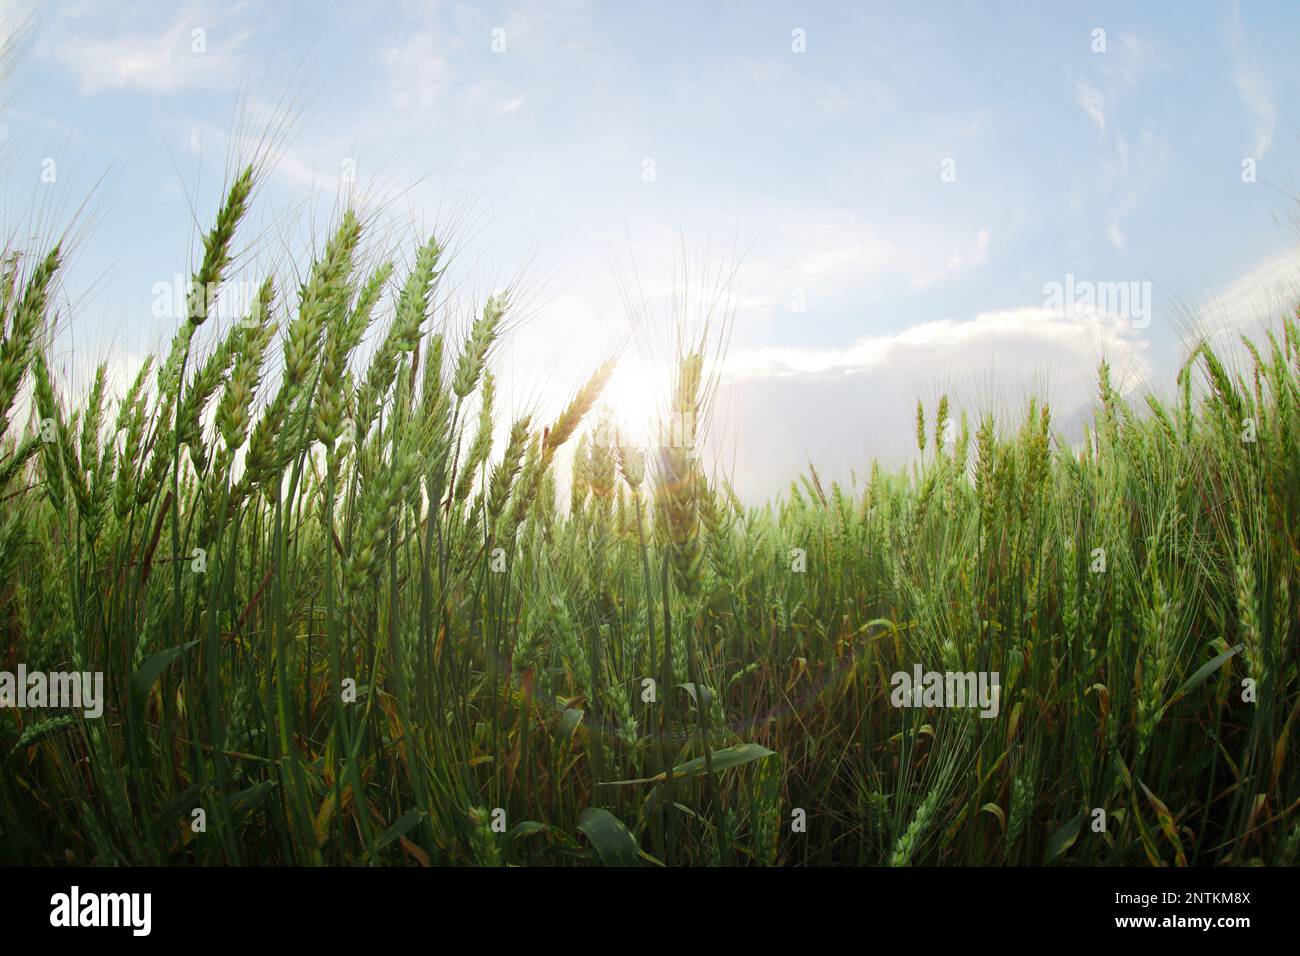 Beautiful view of wheat field, fish eye effect Stock Photo